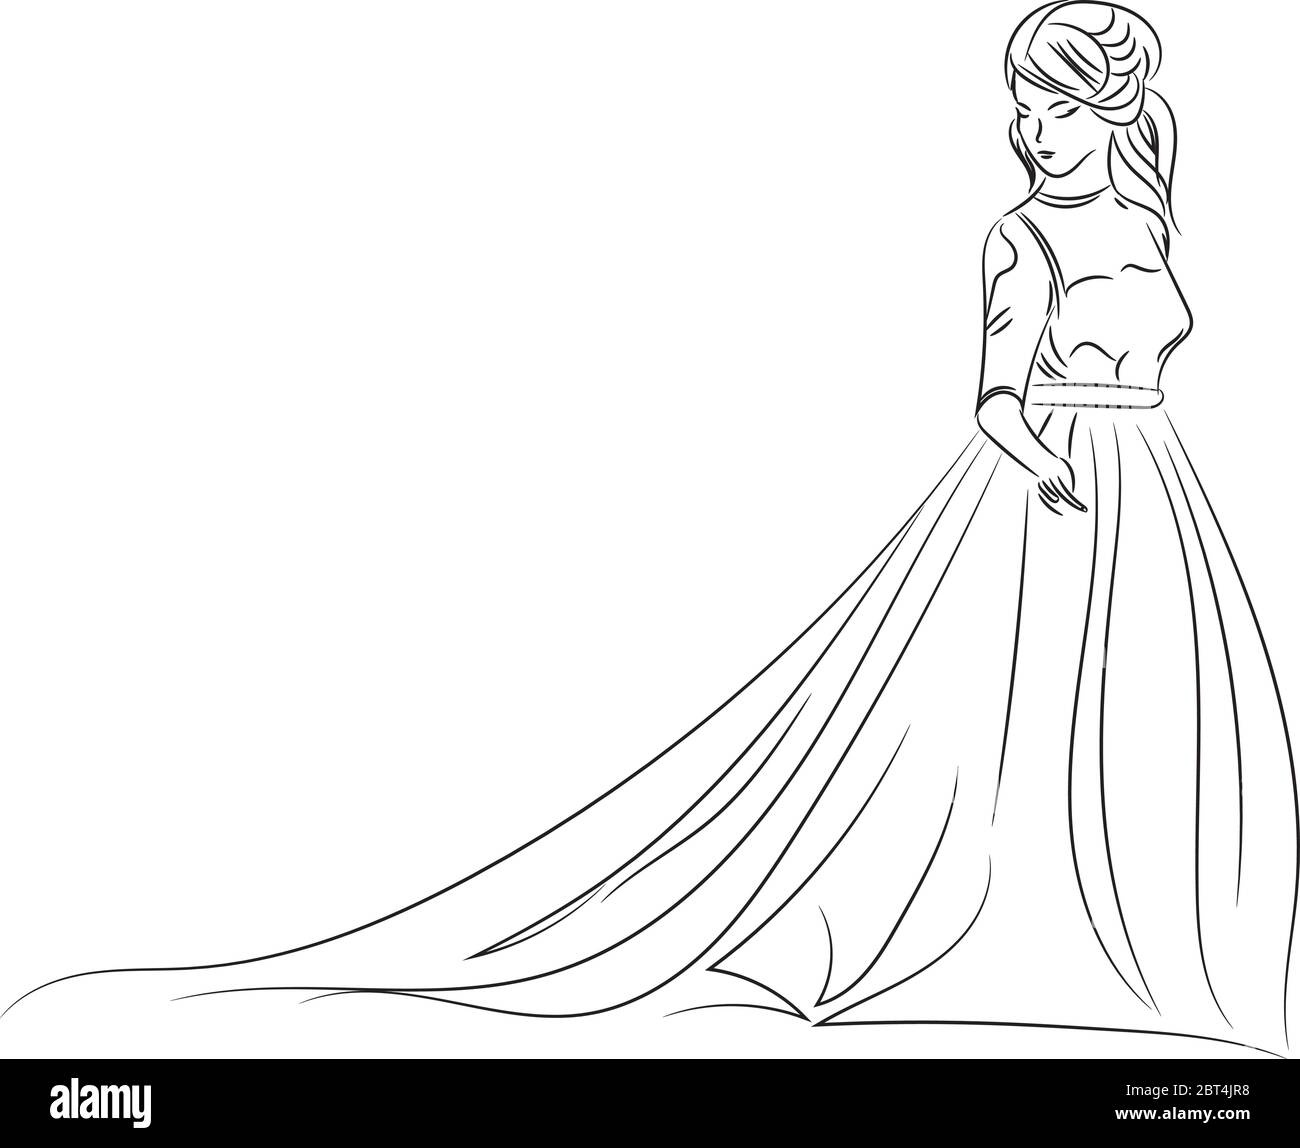 Croquis d'une mariée élégante en robe de mariage blanche. Illustration abstraite de mariage avec contour dessiné à la main Illustration de Vecteur